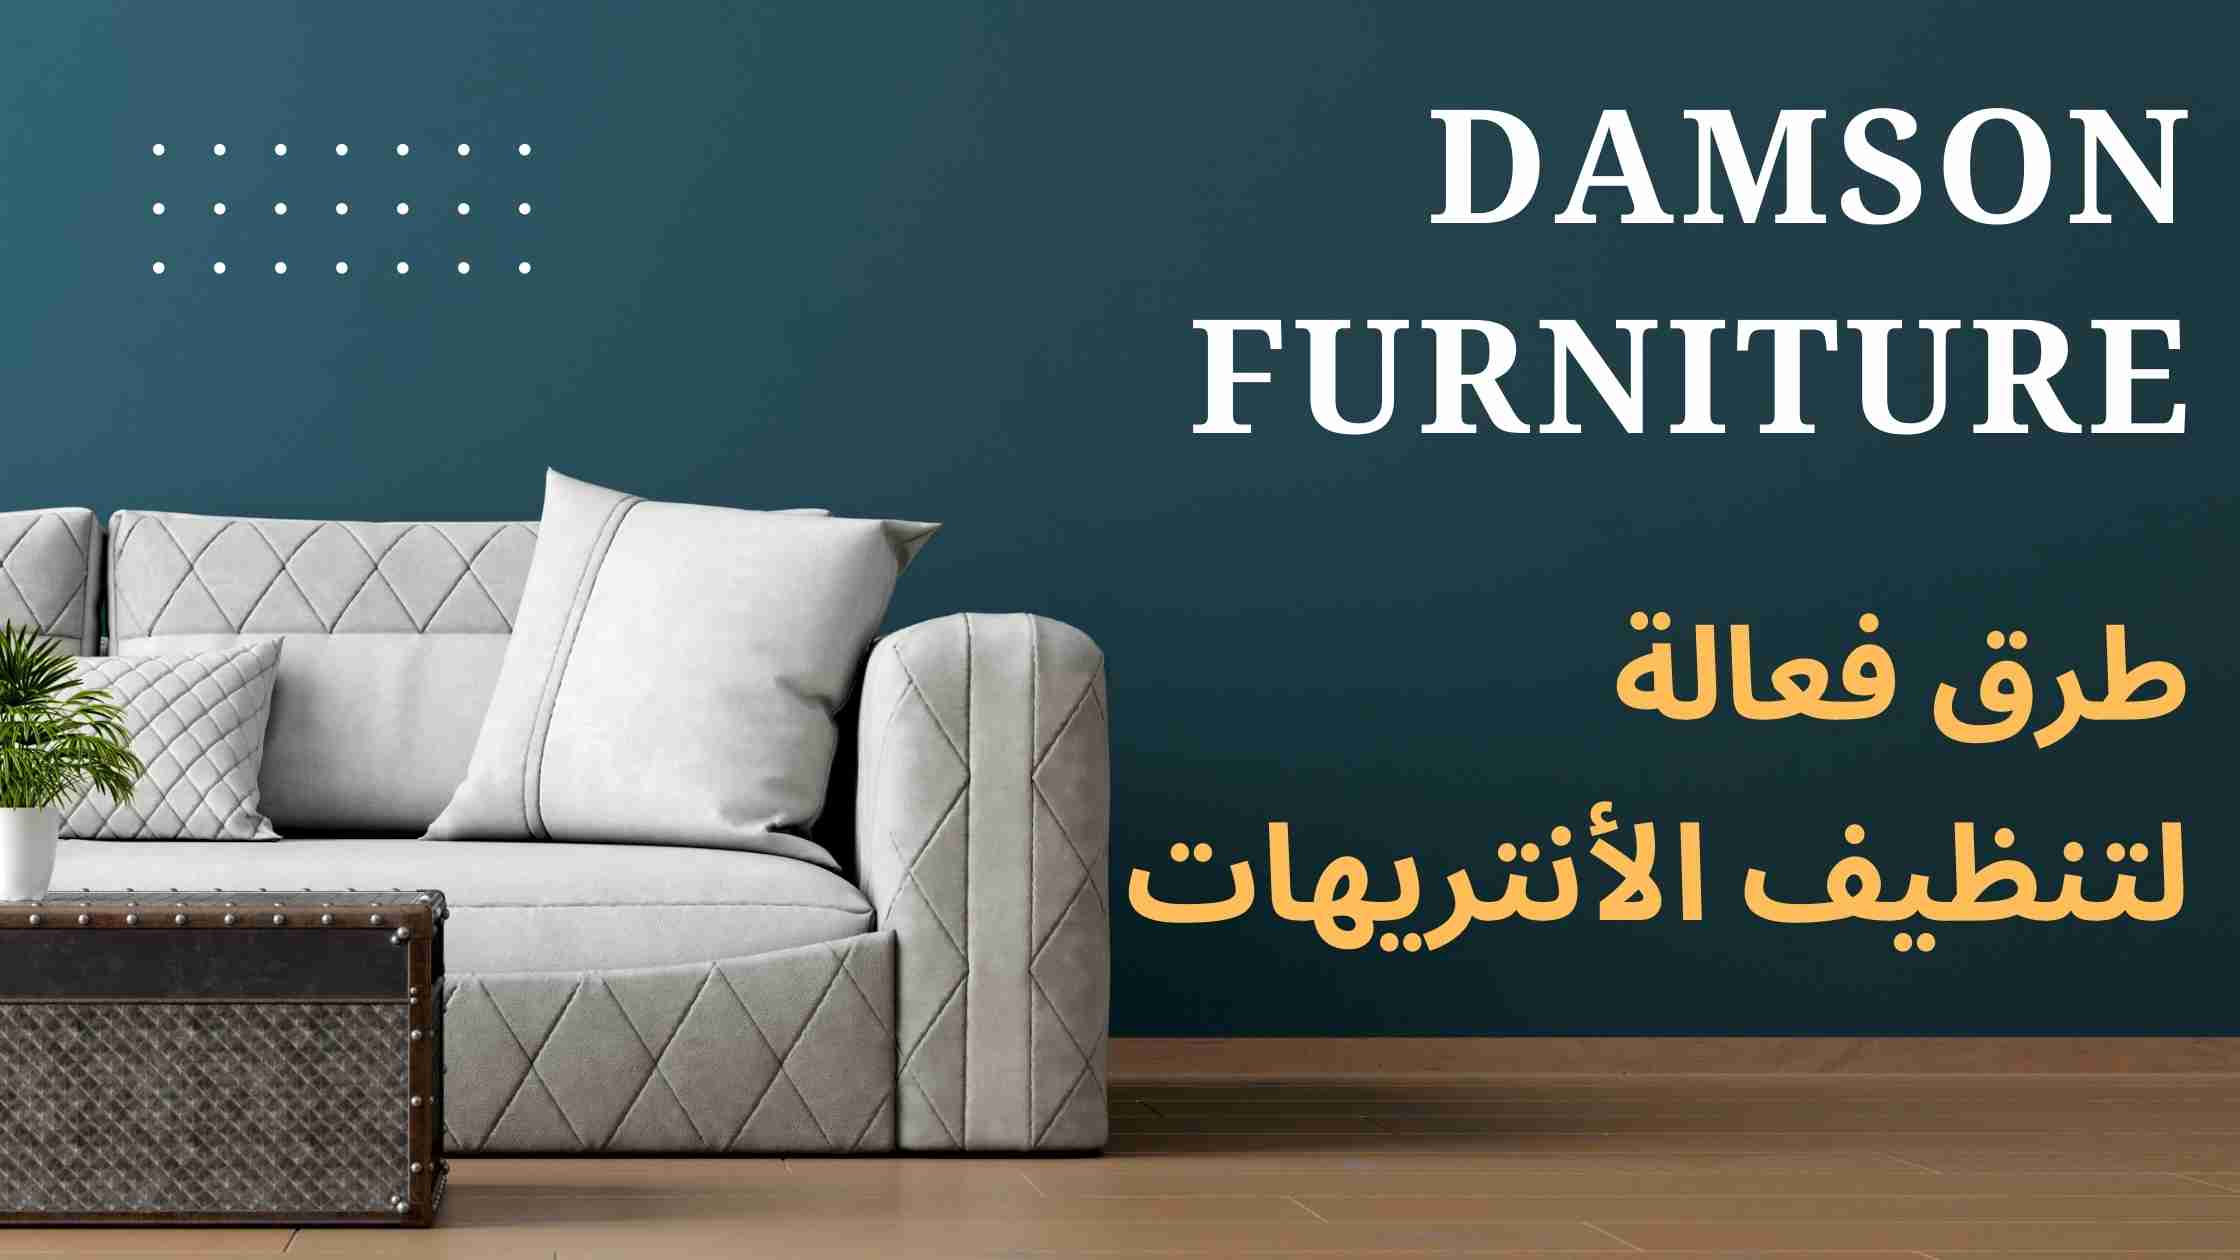 تنظيف الأنتريهات - Damson Furniture